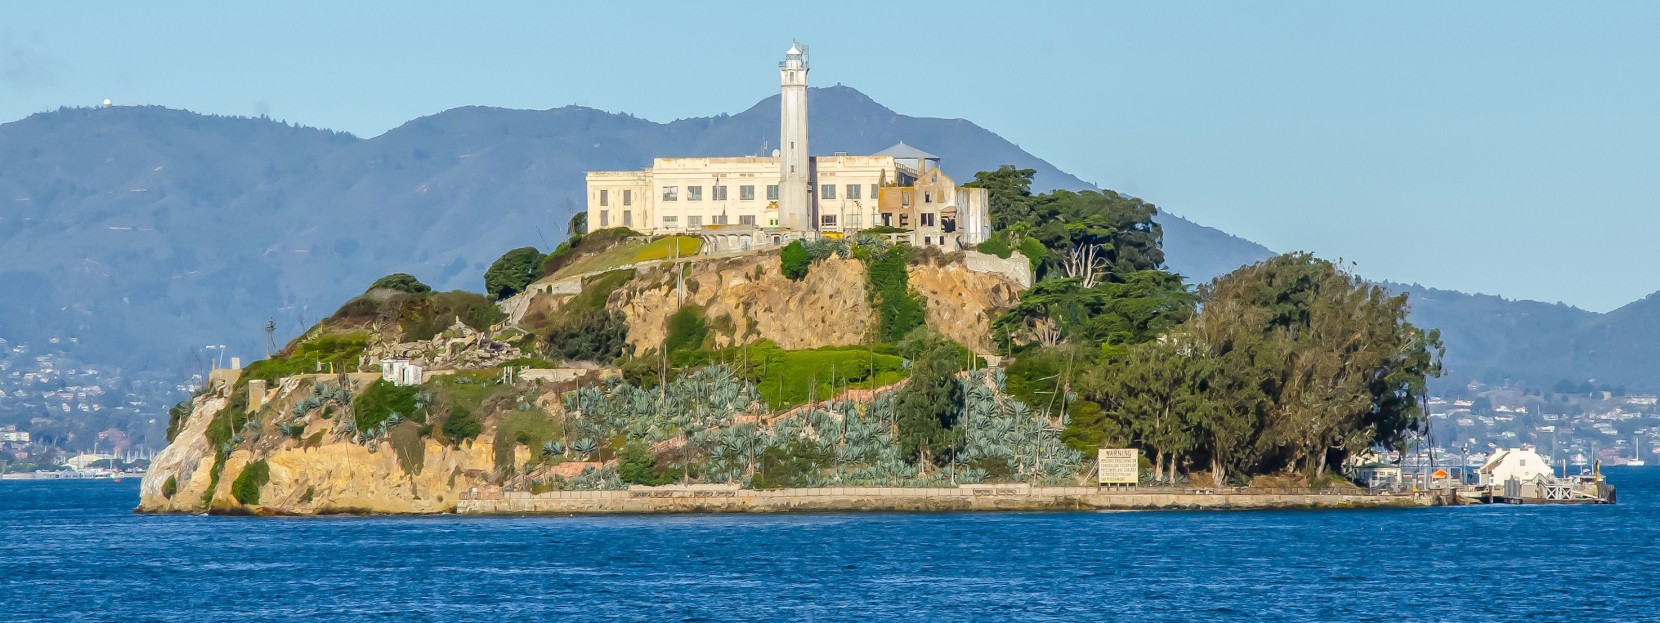 Alcatraz Island, San Francisco, CA